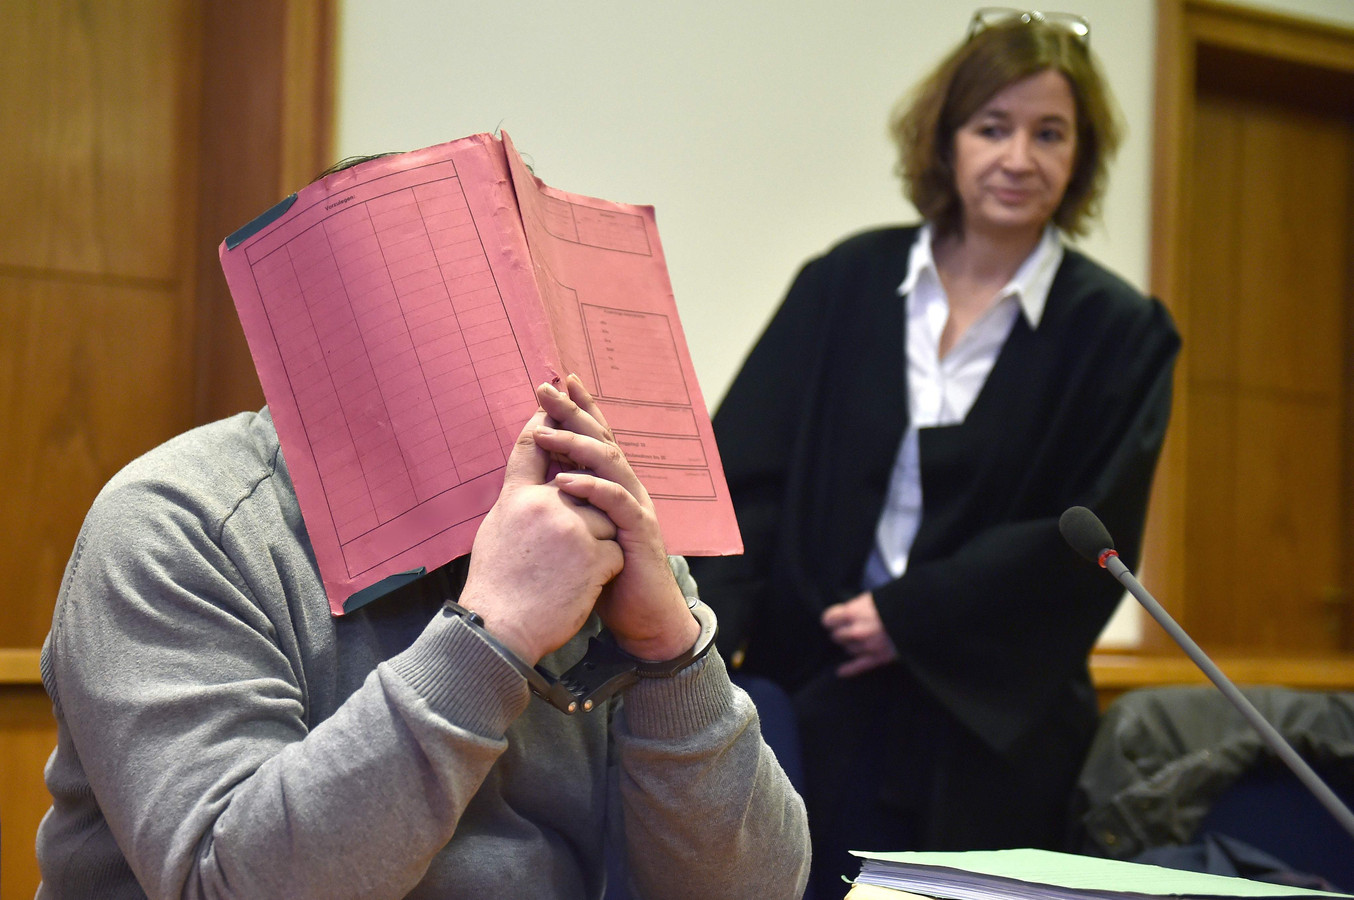 Niels H. verbergt z'n gezicht tijdens het proces in 2015. Naast hem zijn advocate Ulrike Baumann.